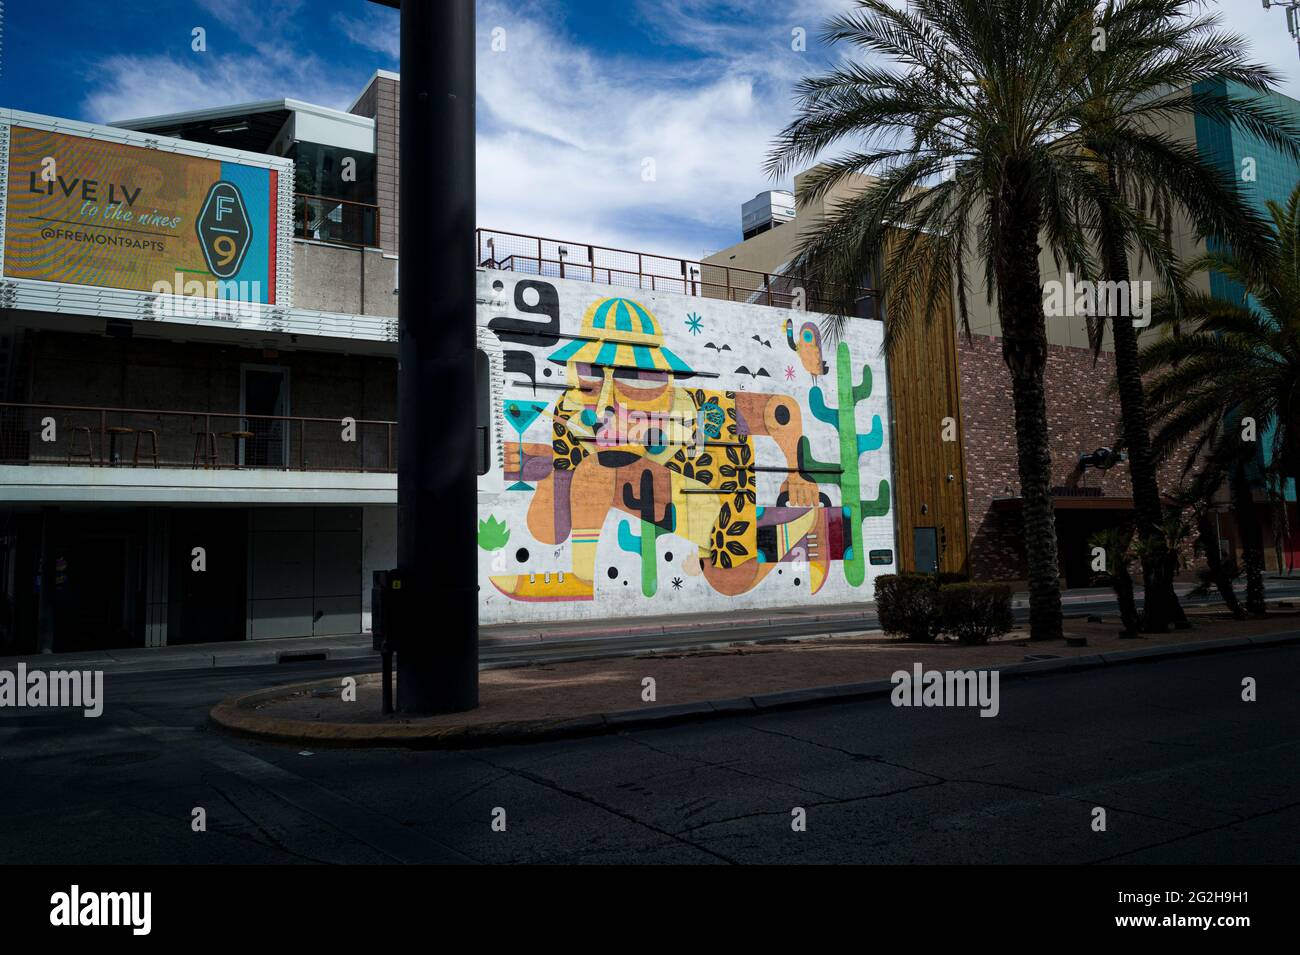 Scene in Las Vegas, Nevada, USA Stock Photo